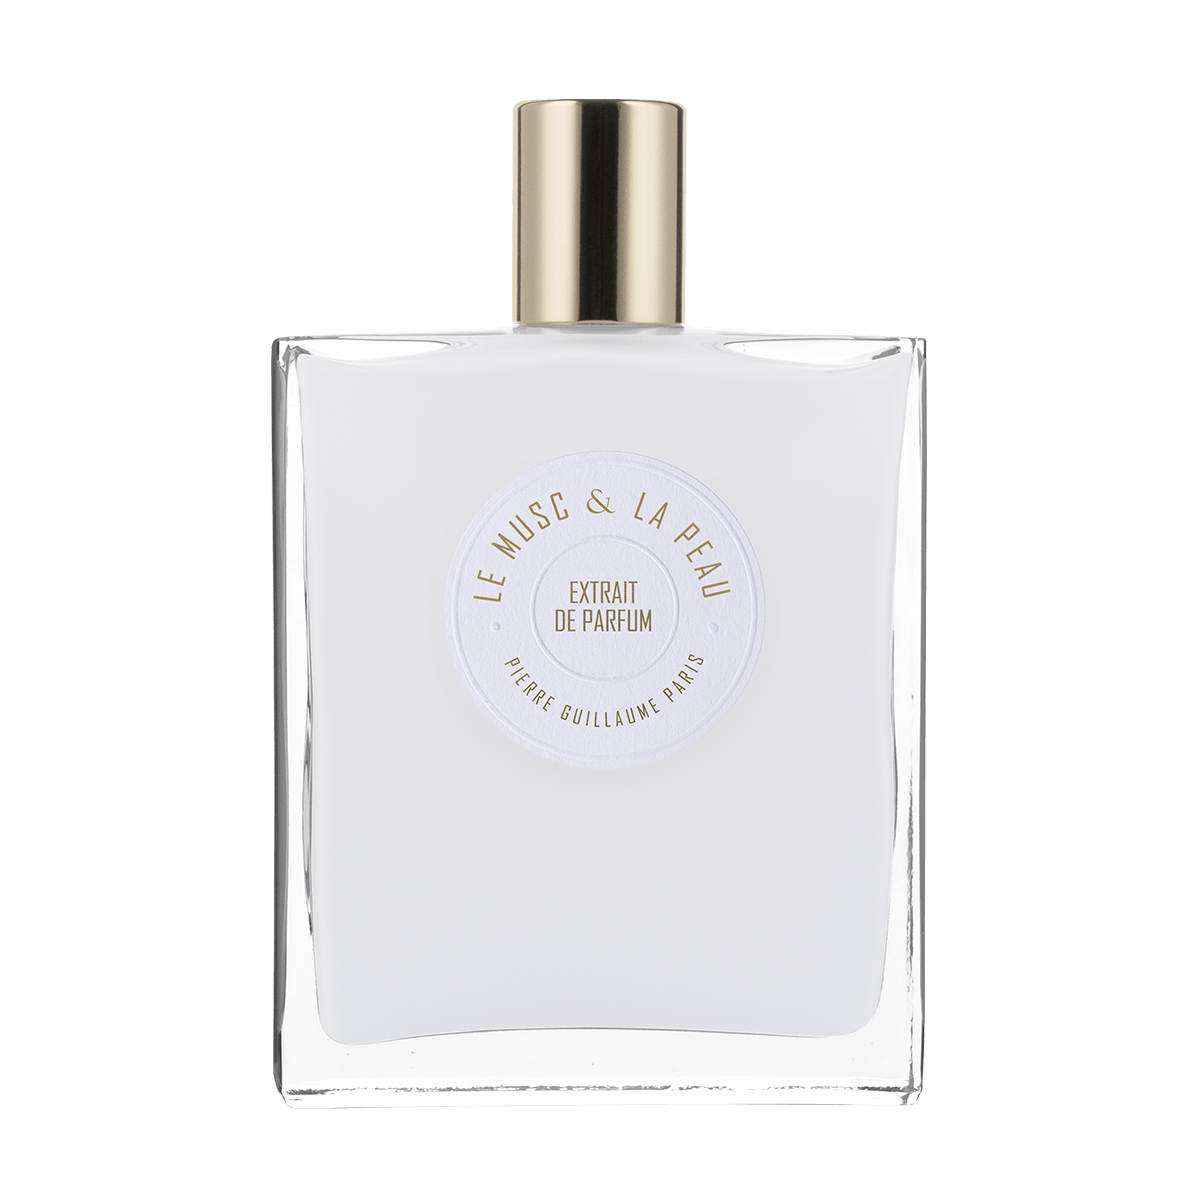 Pierre Guillaume Paris - Le Musc & La Peau Extrait de Parfum 100 ml